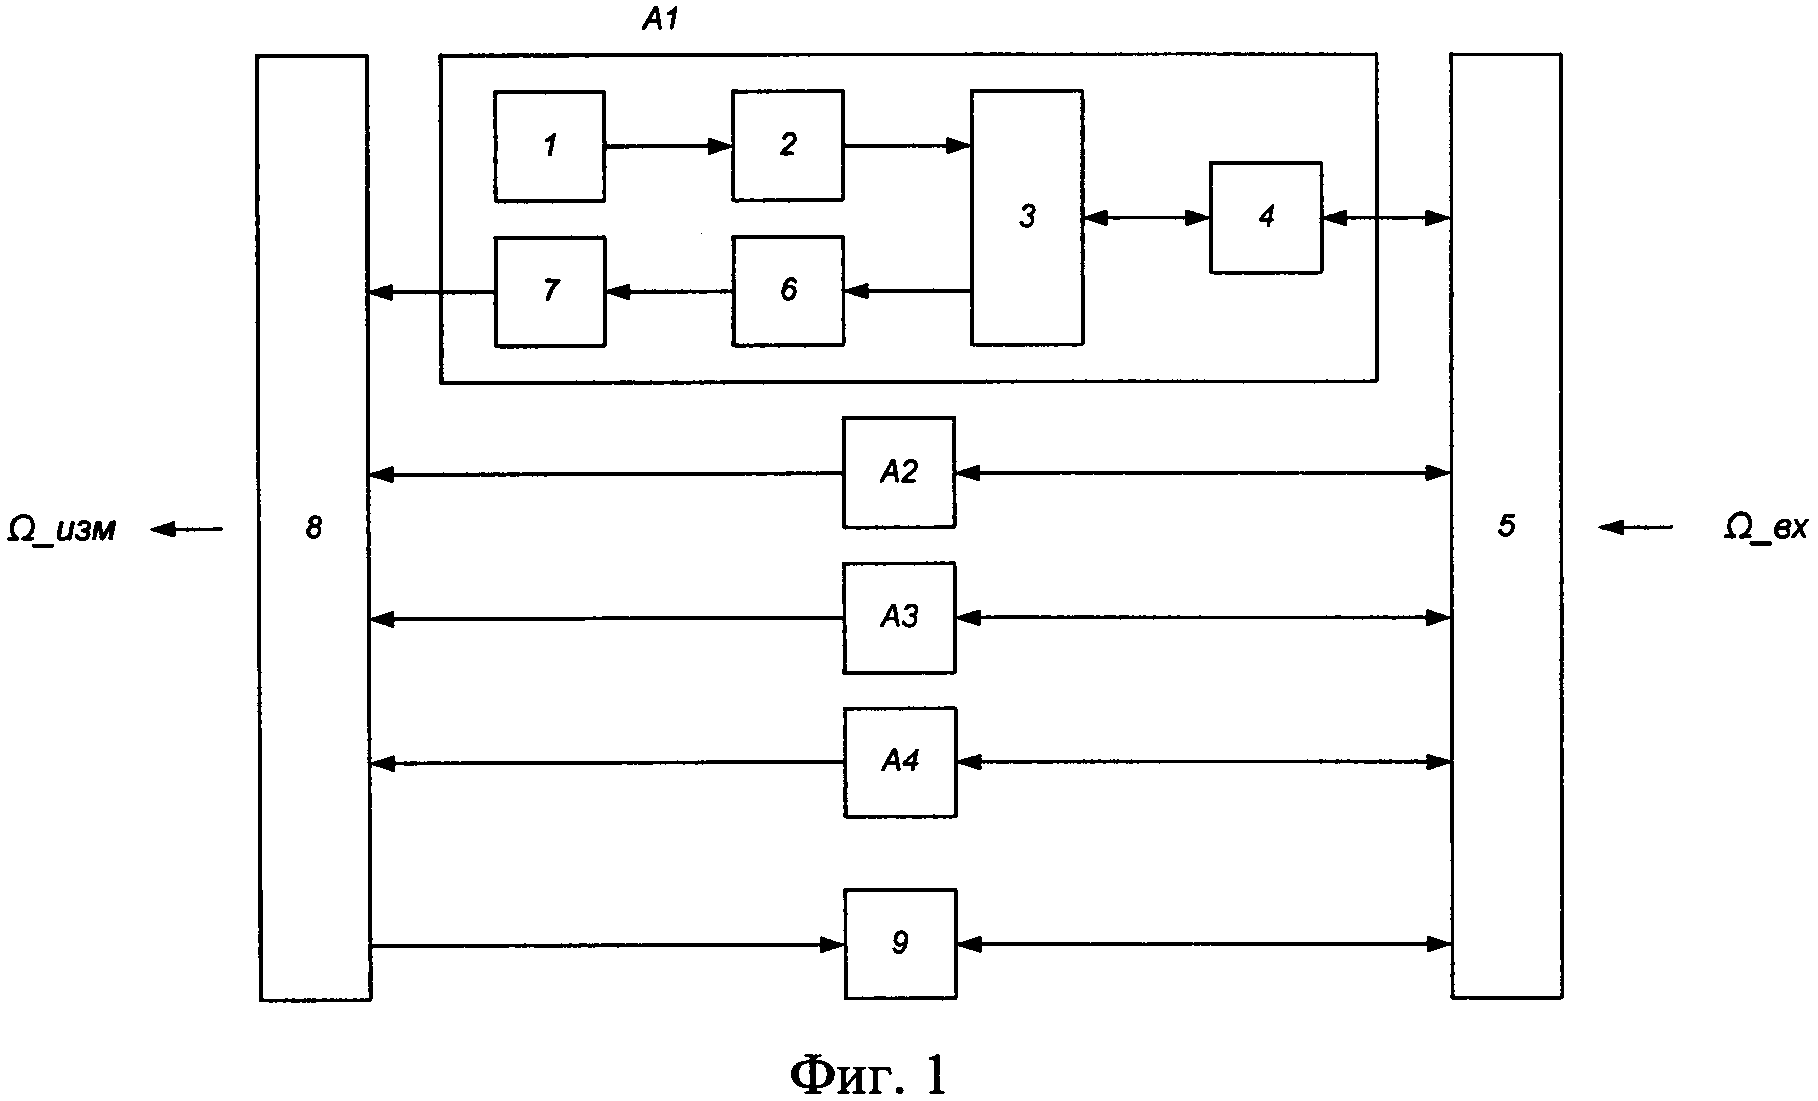 Микро-опто-электро-механический датчик угловой скорости на основе волнового твердотельного гироскопа с кольцевым резонатором и оптического туннельного эффекта